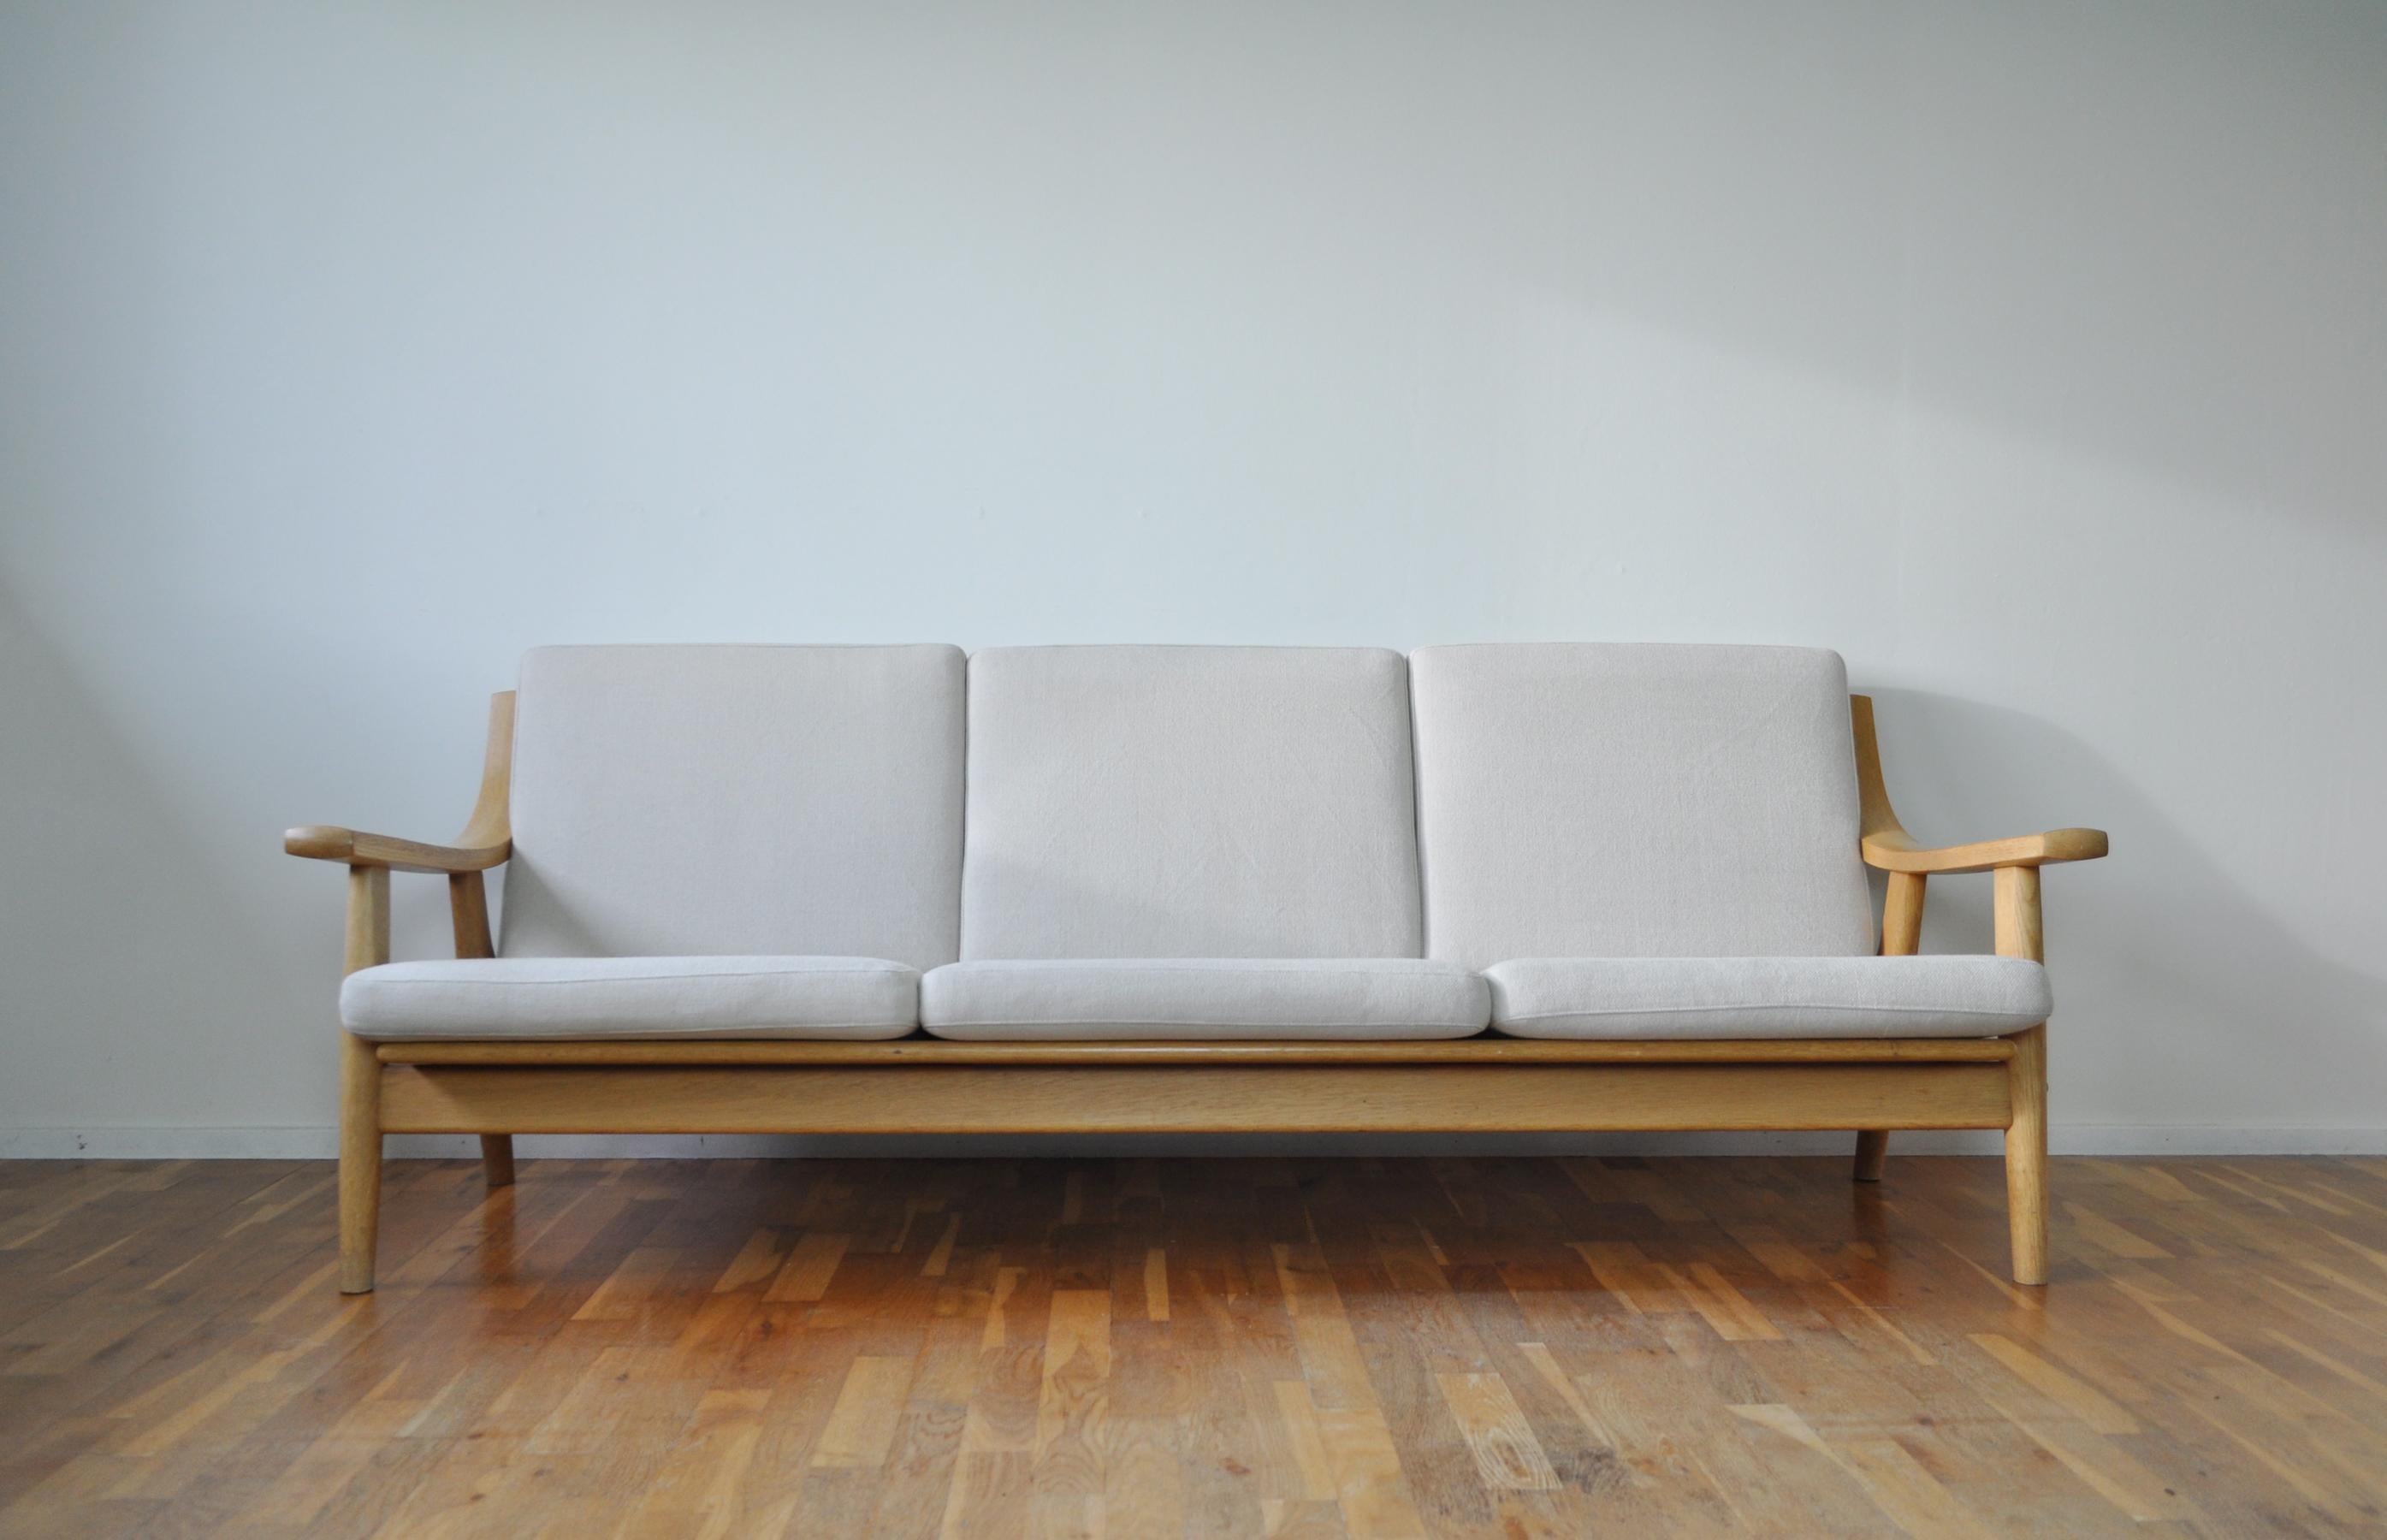 Hans J. Wegner sofa in solid oak, model GE 530. Quality craftsmanship manufactured by GETAMA.